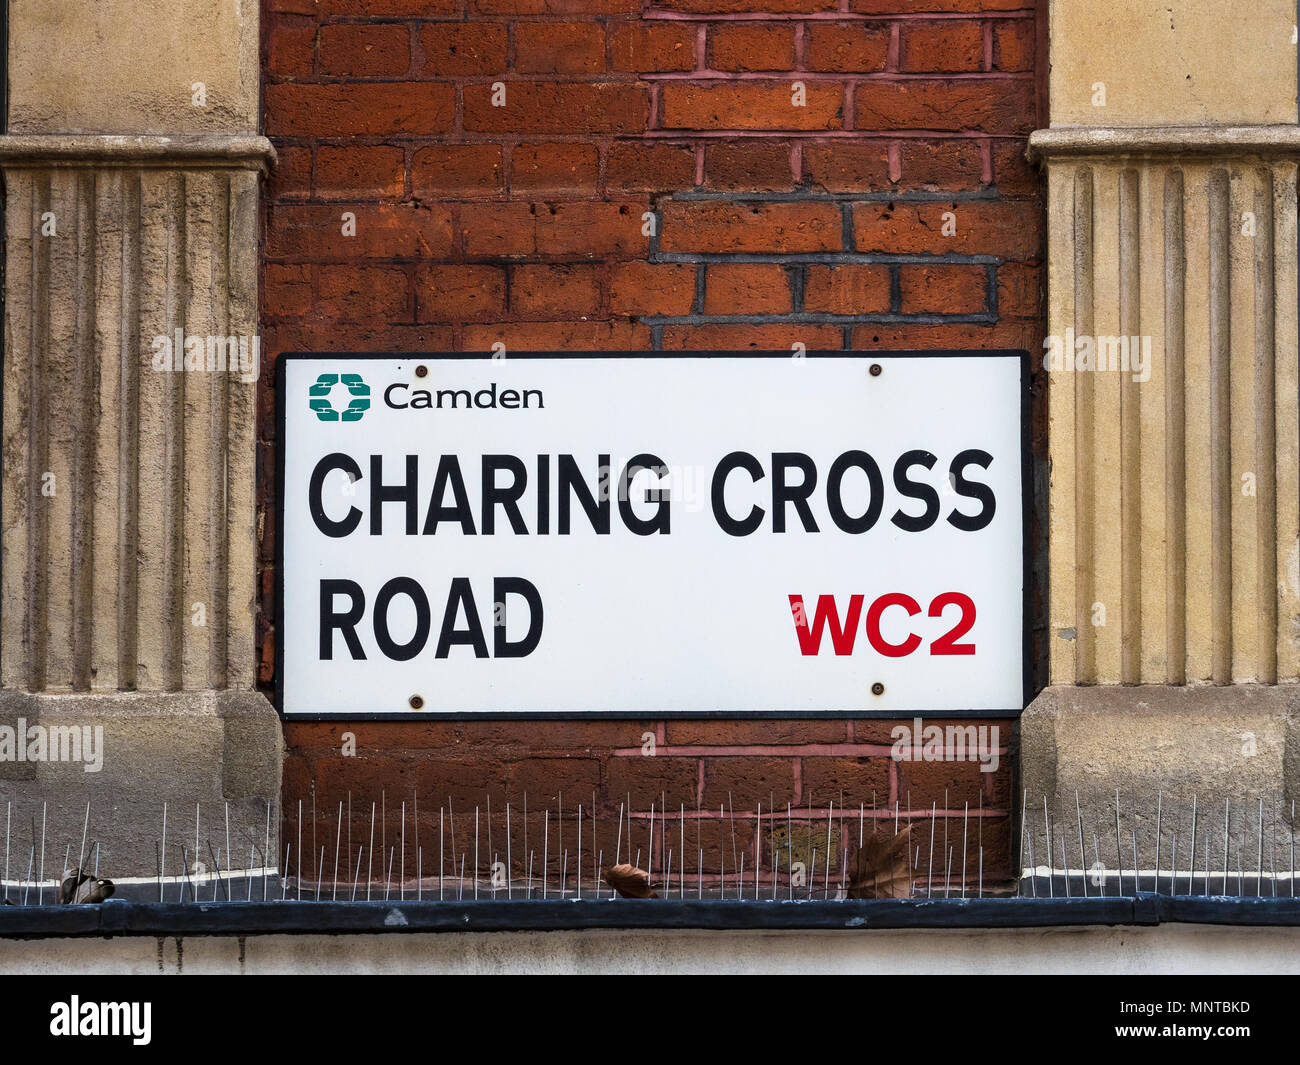 Soho Straßenschilder Serie - Charing Cross Road WC2 - Londons Stadtteil Soho Straßenschilder Stockfoto